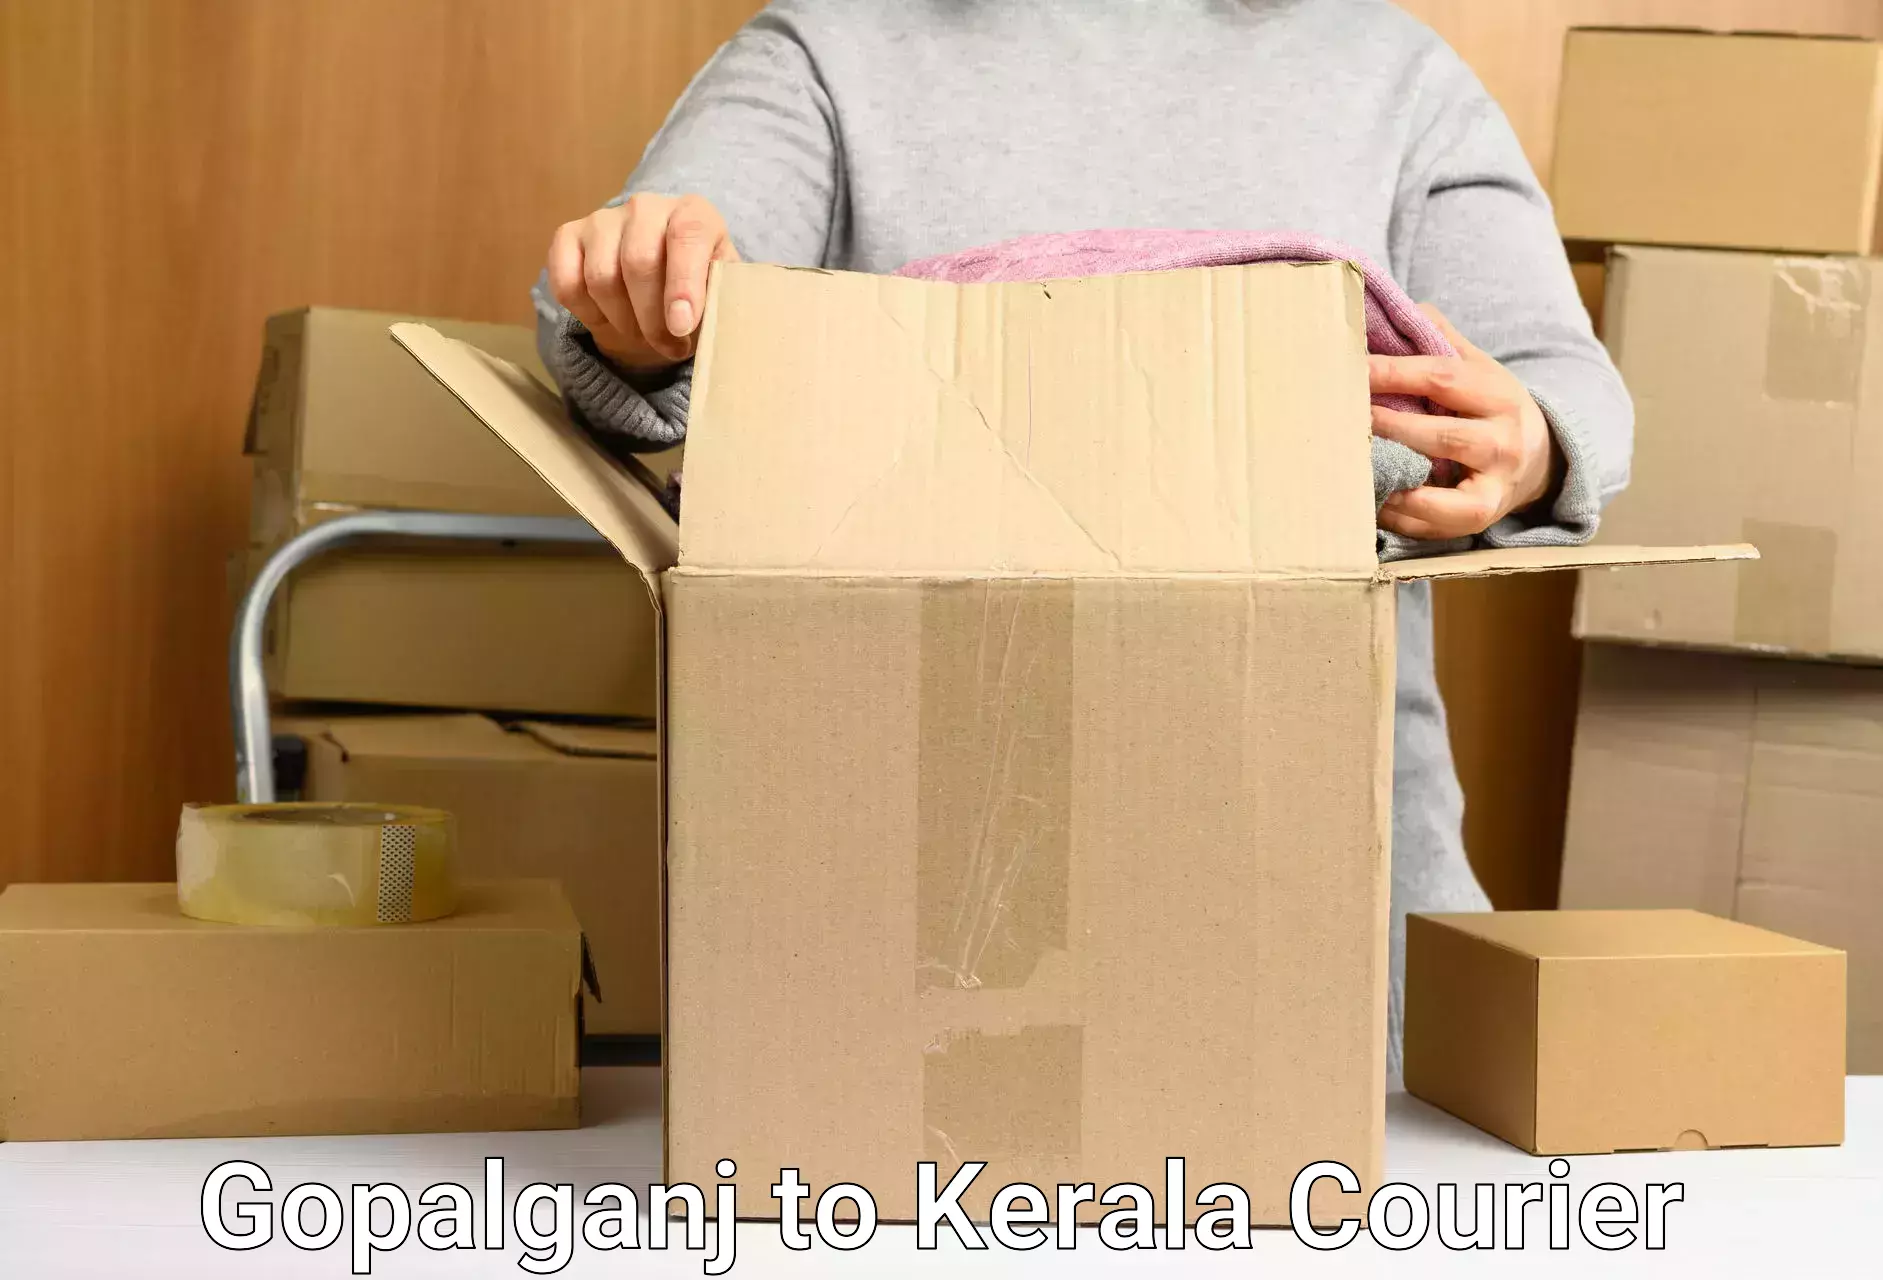 Package delivery network Gopalganj to Kerala